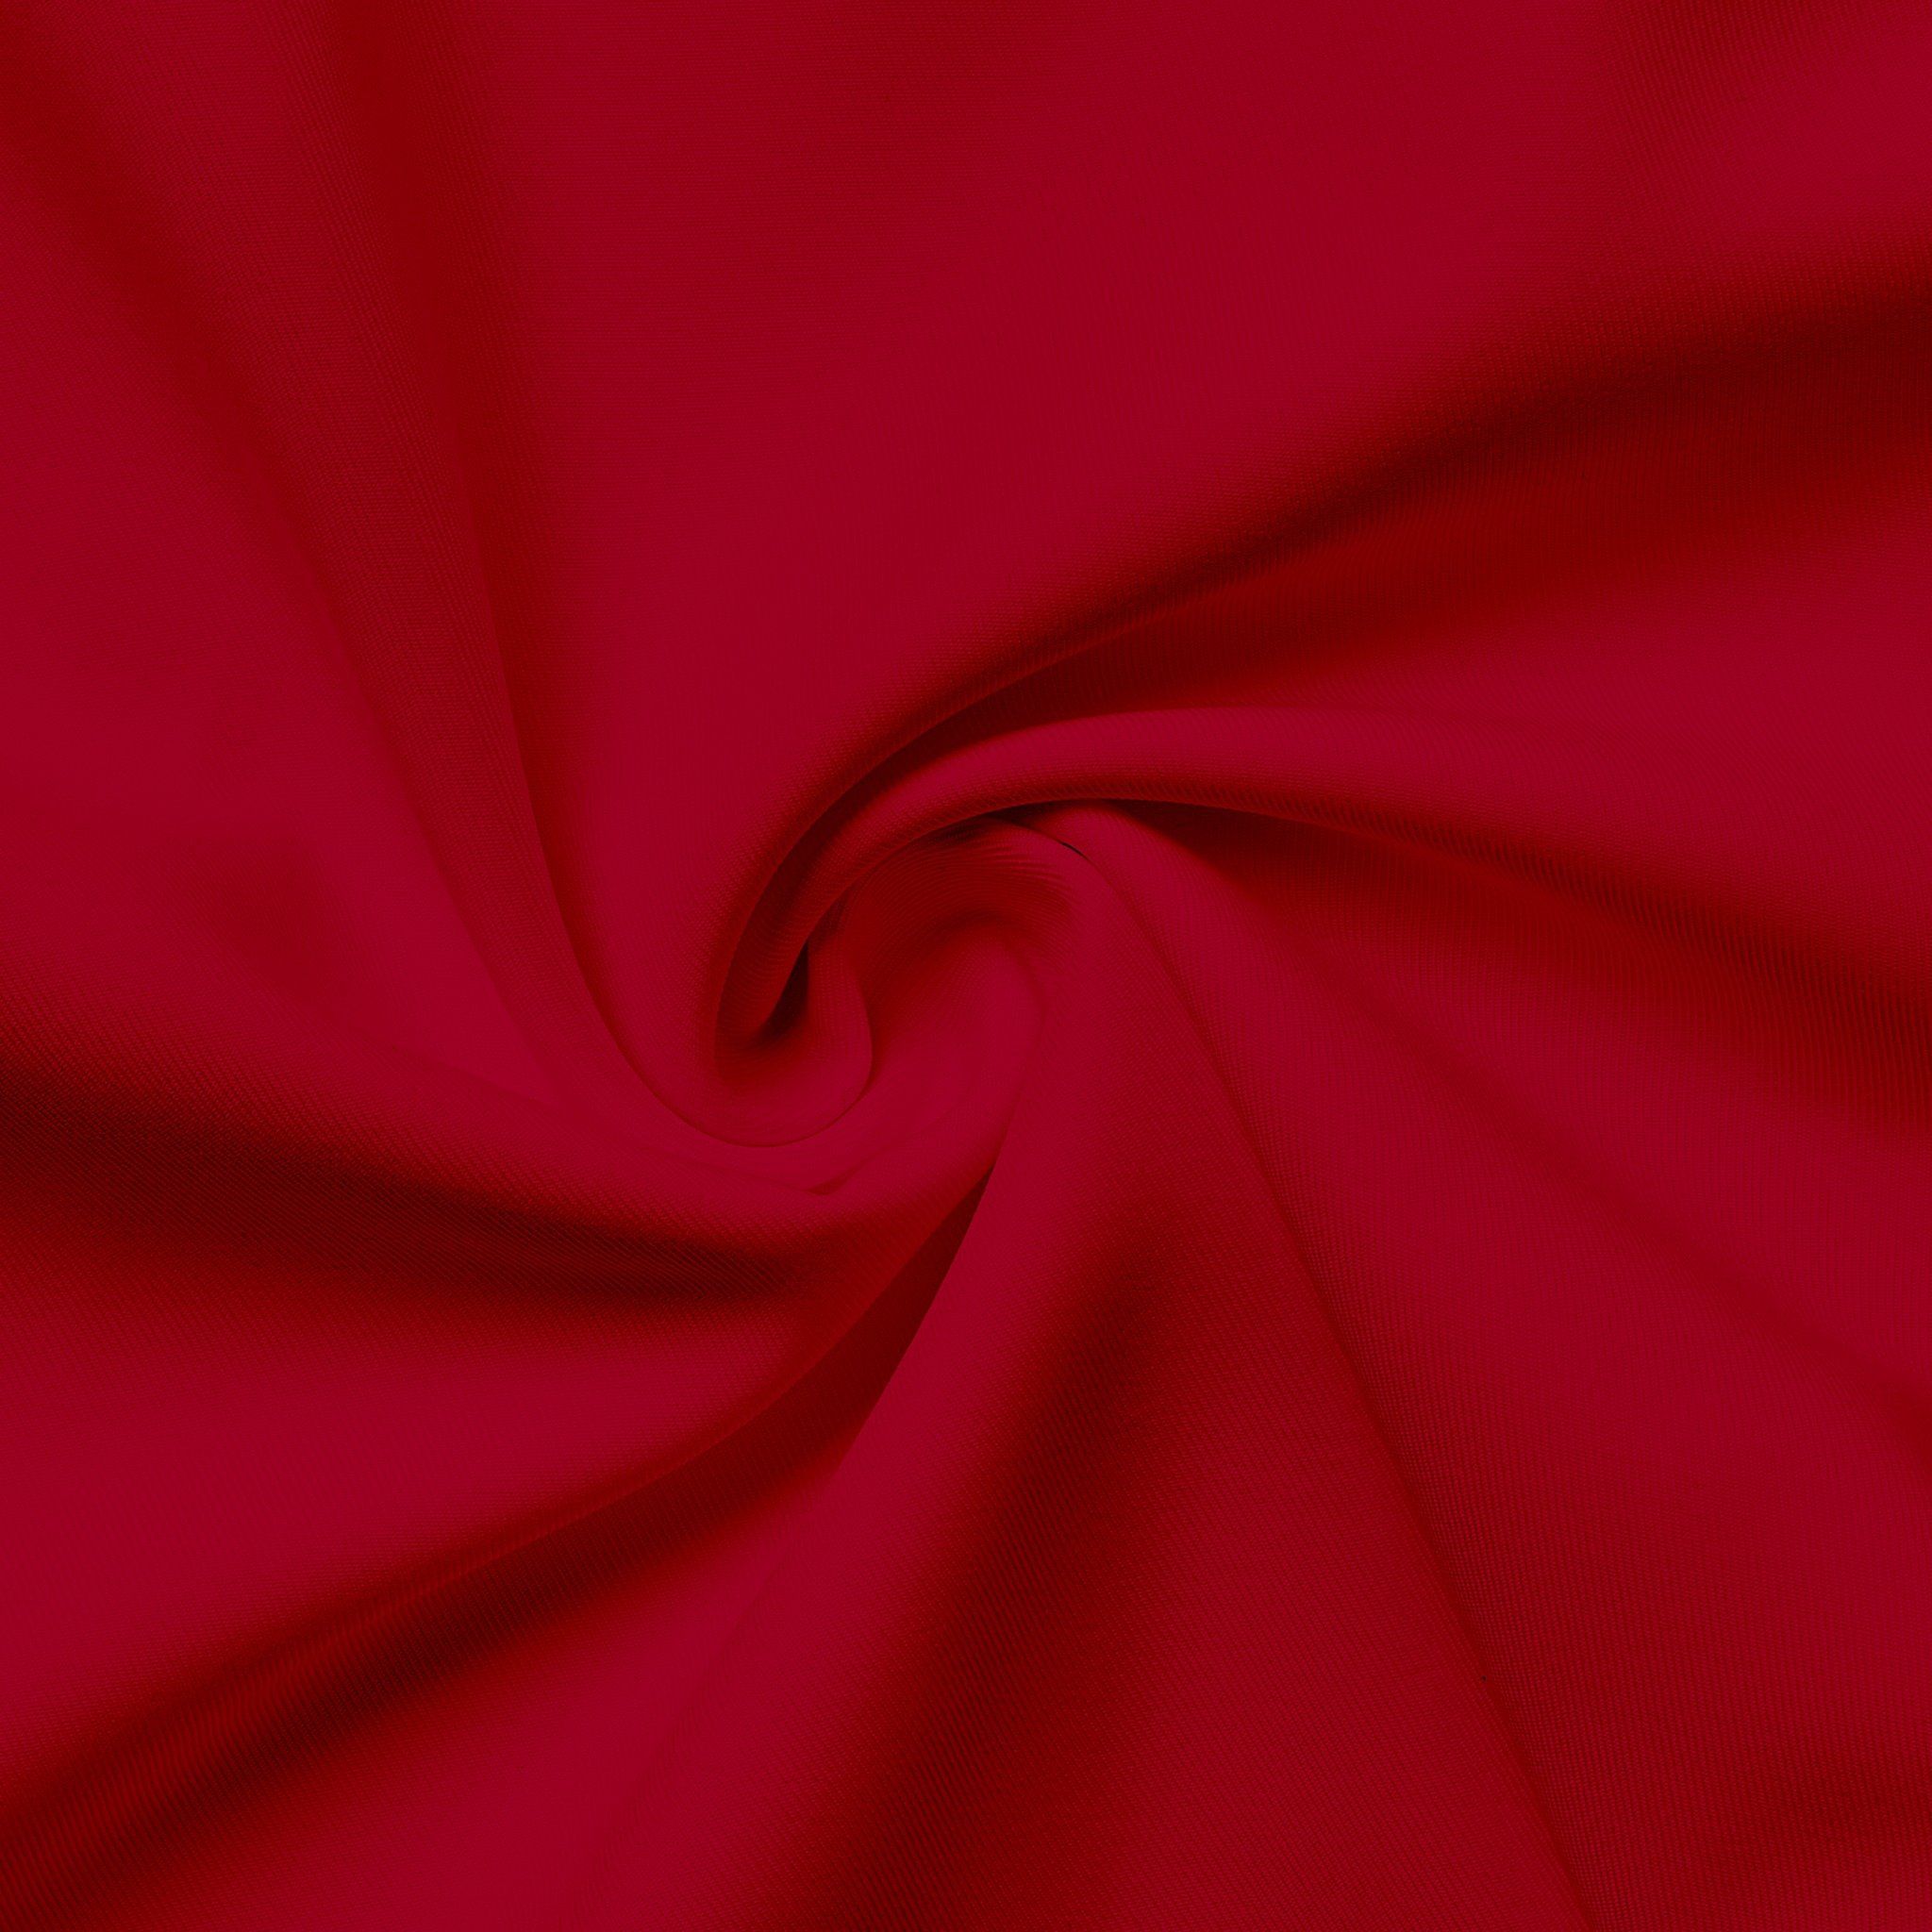 INITIAL T-SHIRT/DARK RED: Chiêm ngưỡng bộ sưu tập áo thun đầy phong cách từ INITIAL, cùng đặc trưng màu đỏ đậm nổi bật. Với thiết kế đơn giản, tinh tế và chất liệu cao cấp, Initial T-Shirt/Dark Red là sự kết hợp hoàn hảo giữa phong cách và sự thoải mái. Hãy tìm cho mình một chiếc áo Initial và trải nghiệm sự khác biệt.